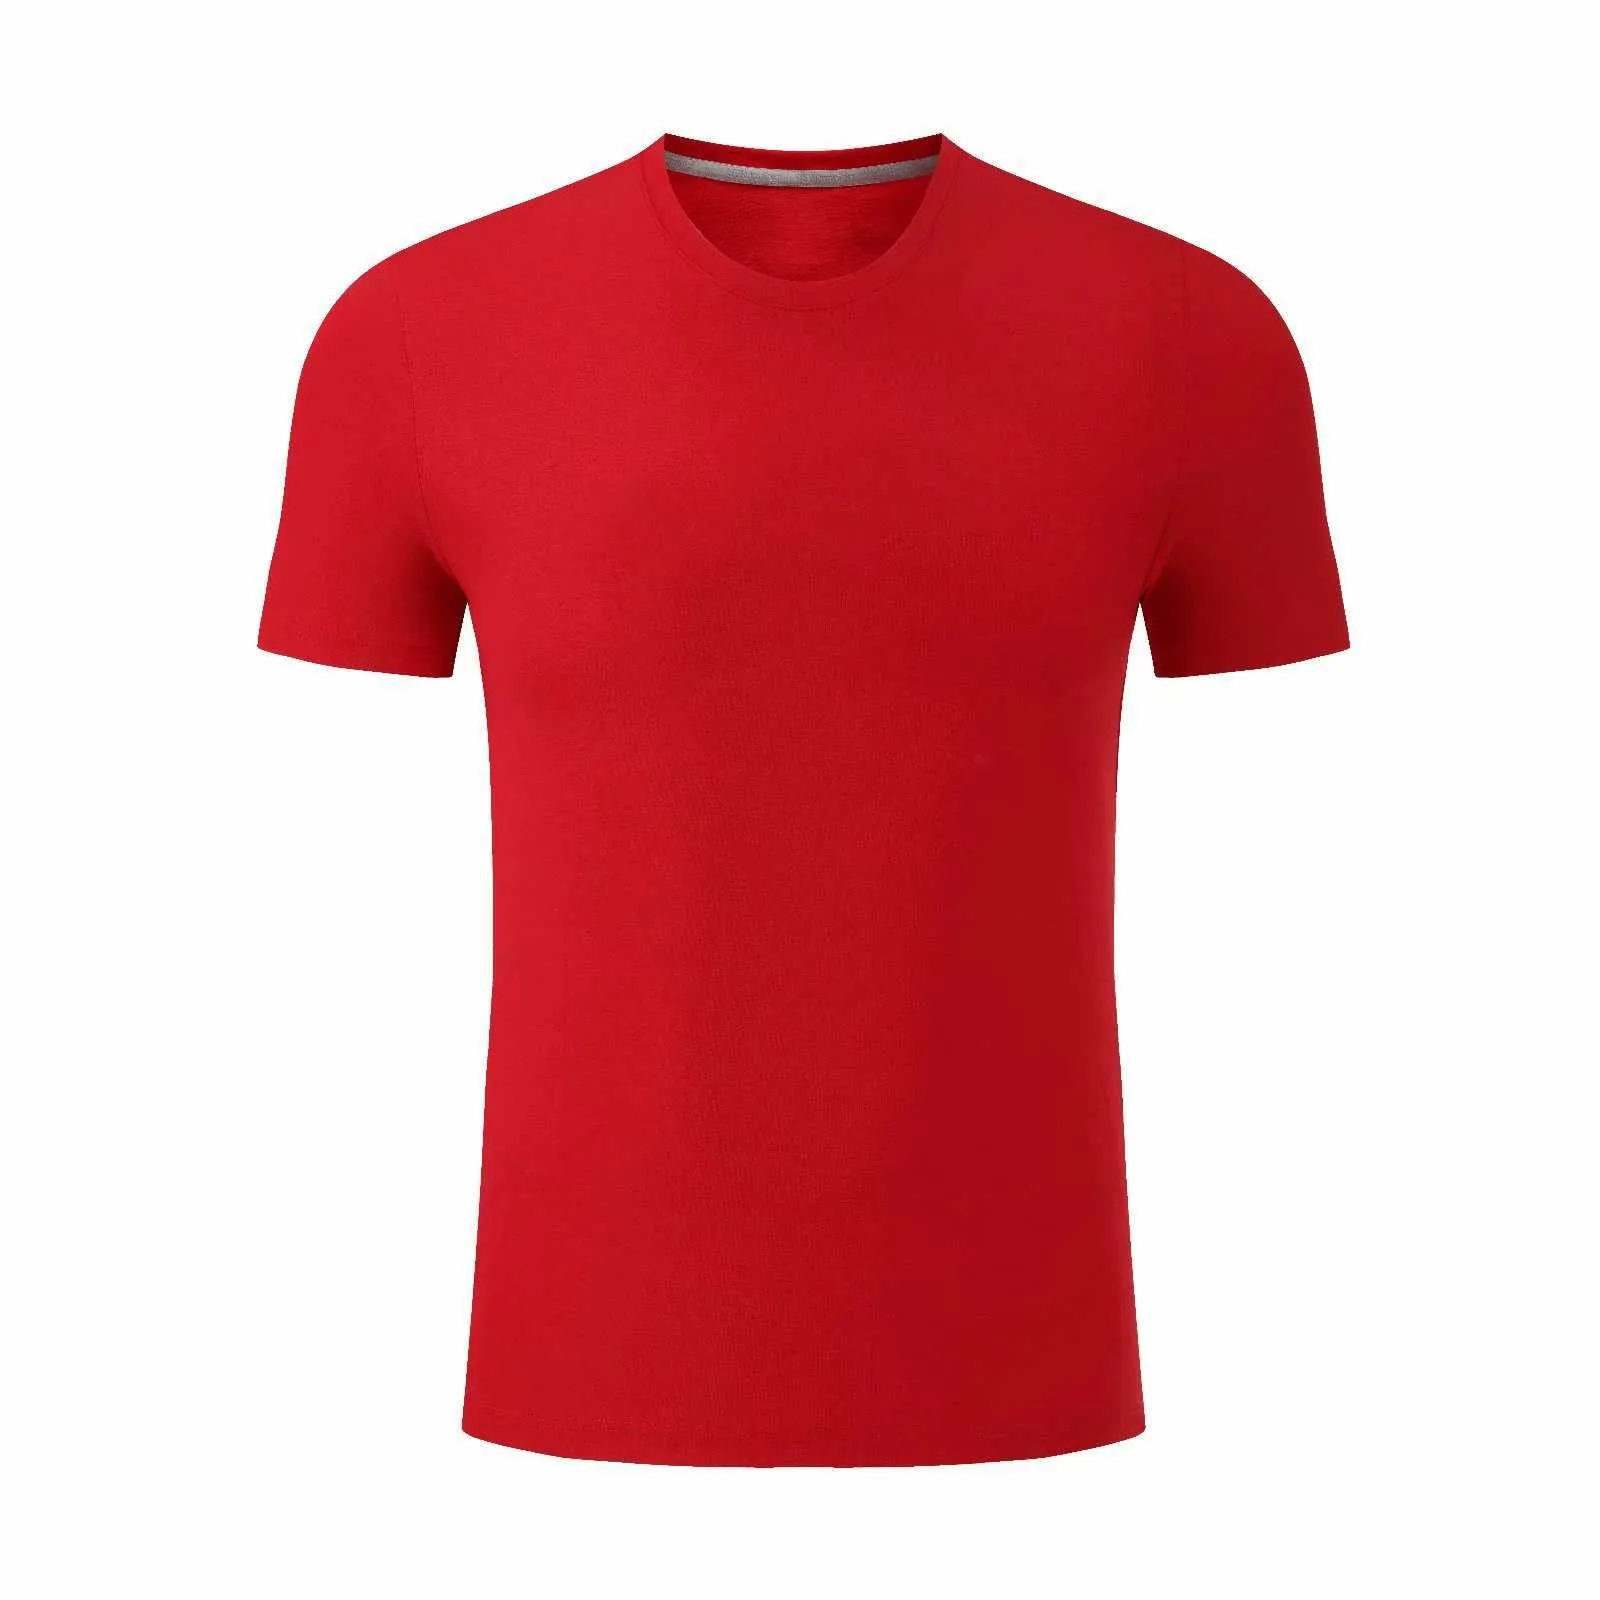 2021 2022 camiseta de fútbol de personalización simple 21 22 camiseta de entrenamiento de fútbol ropa deportiva AAAA855